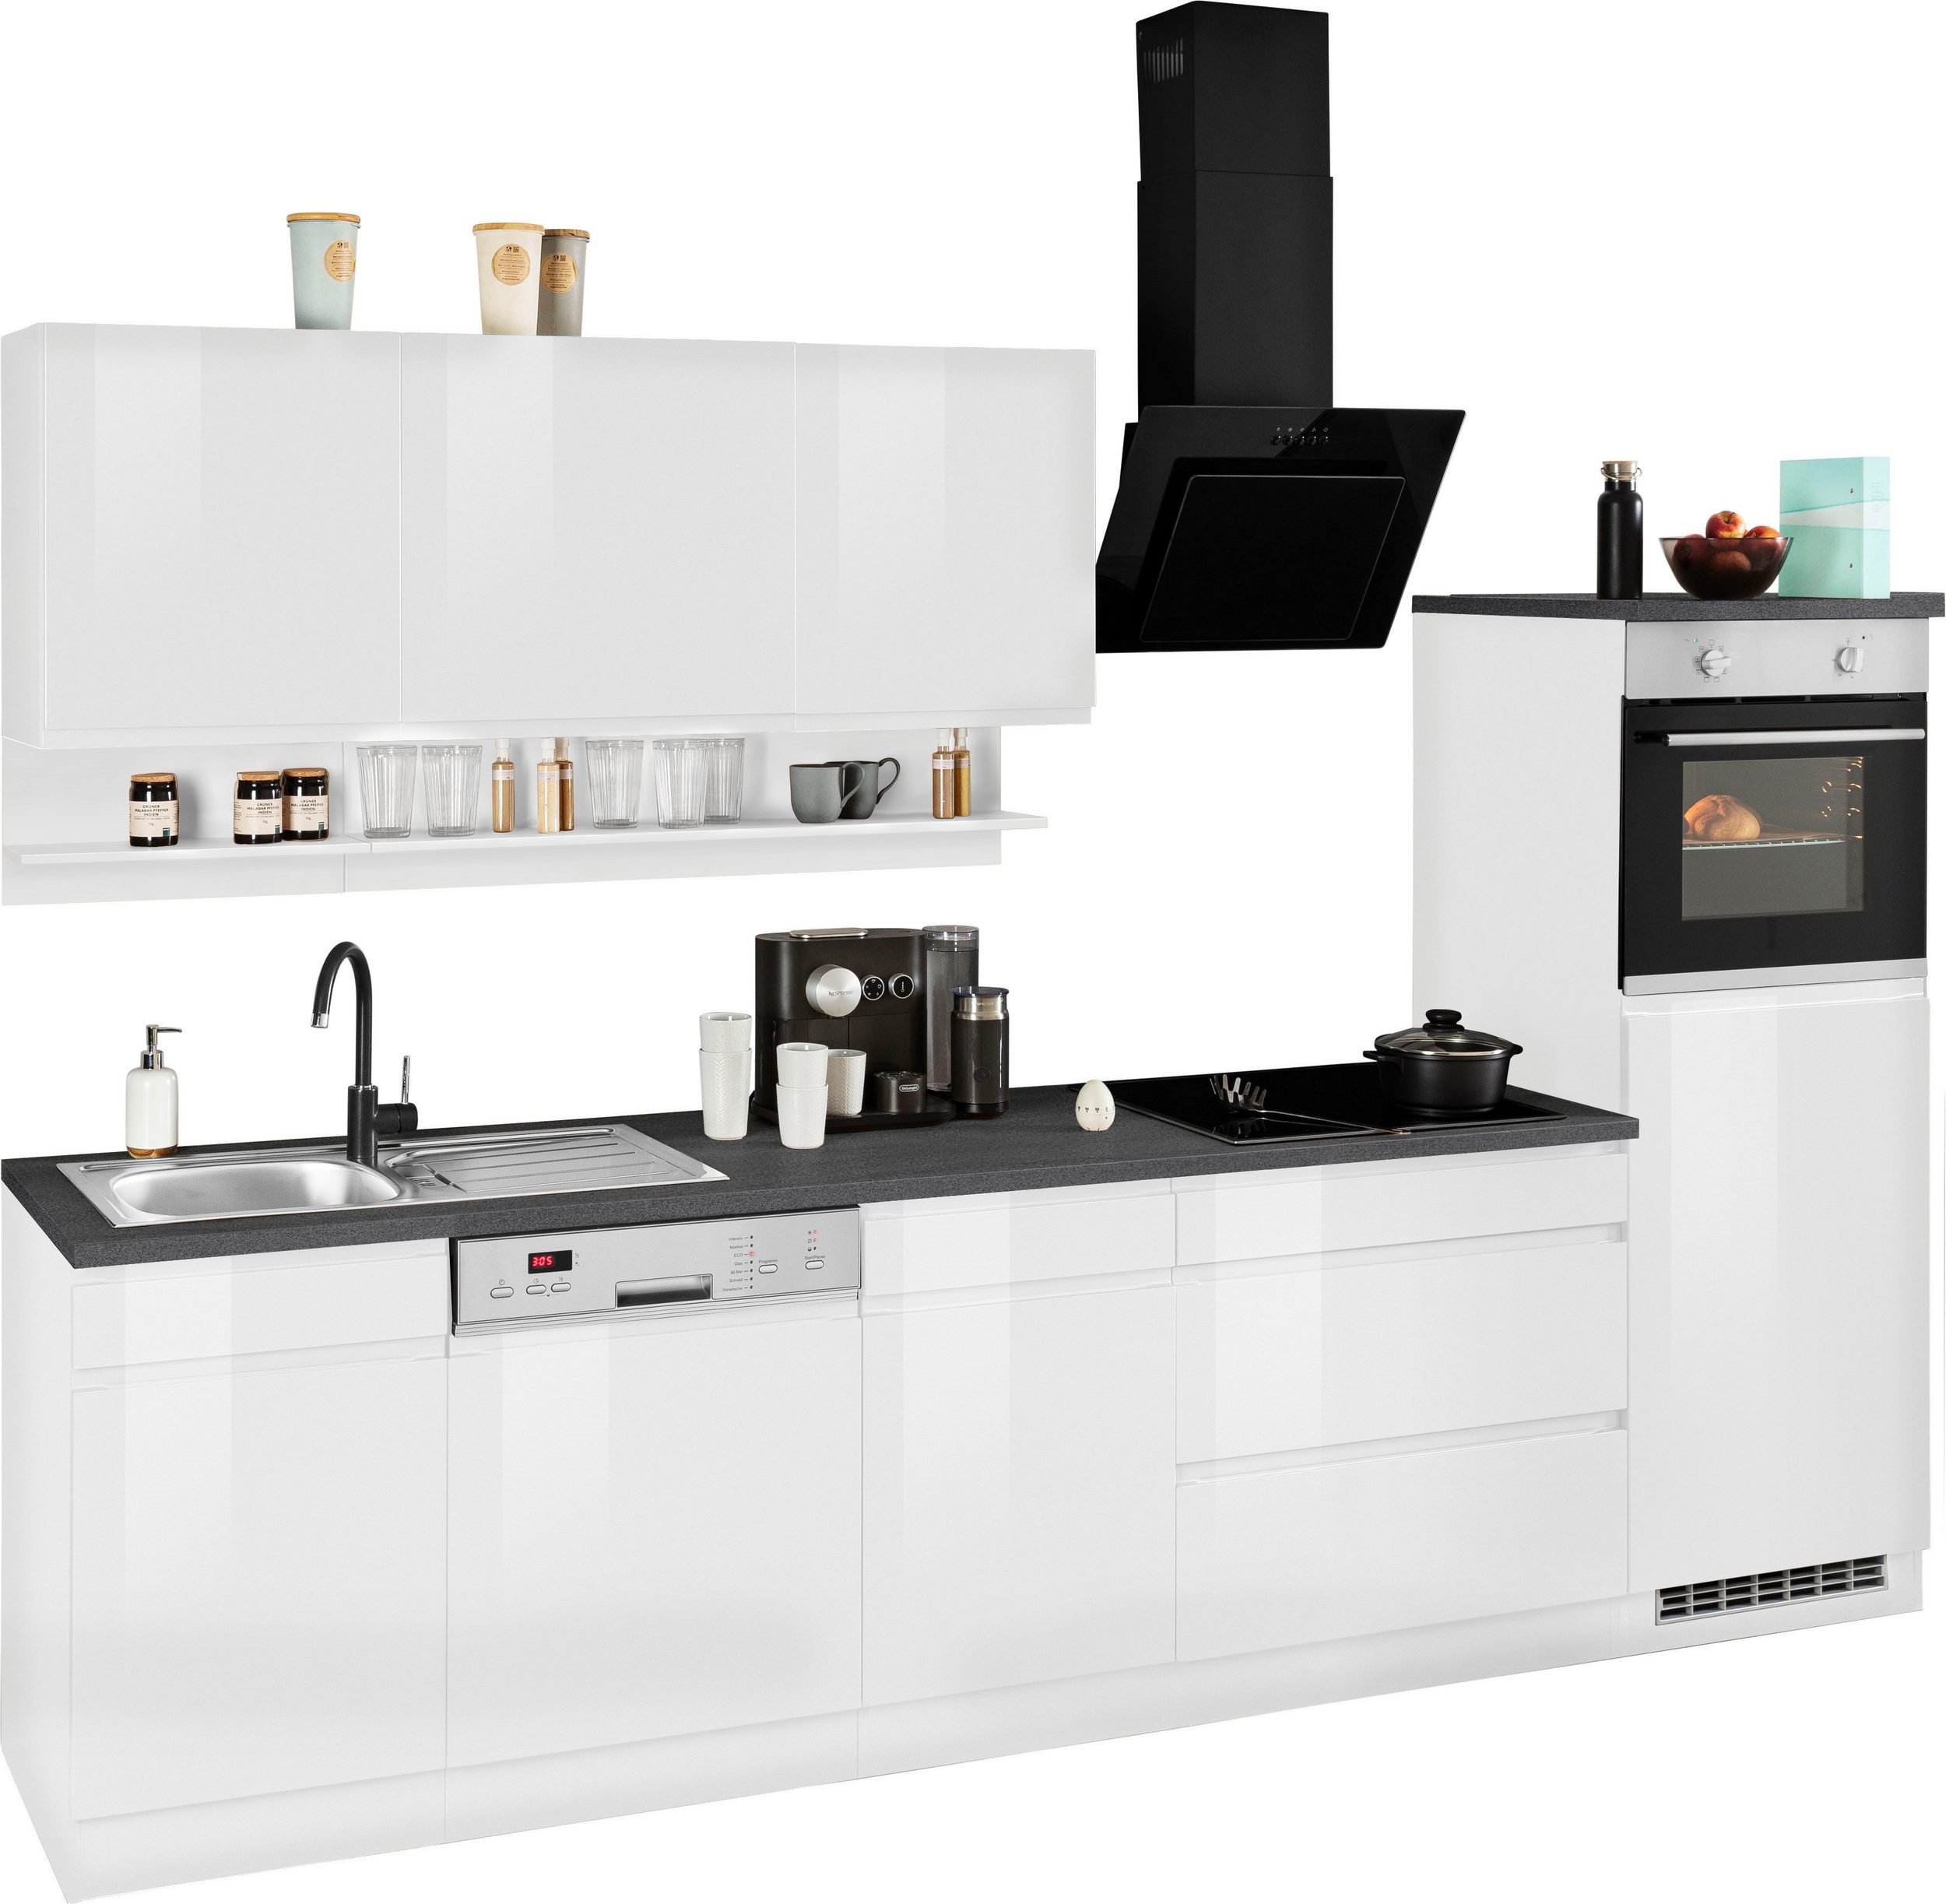 Küche , Küchenzeile , Küchenblock , Justine 300 cm , inclusive  Elektrogeräte und Spülbecken Edelstahl | KAP Möbel Shop